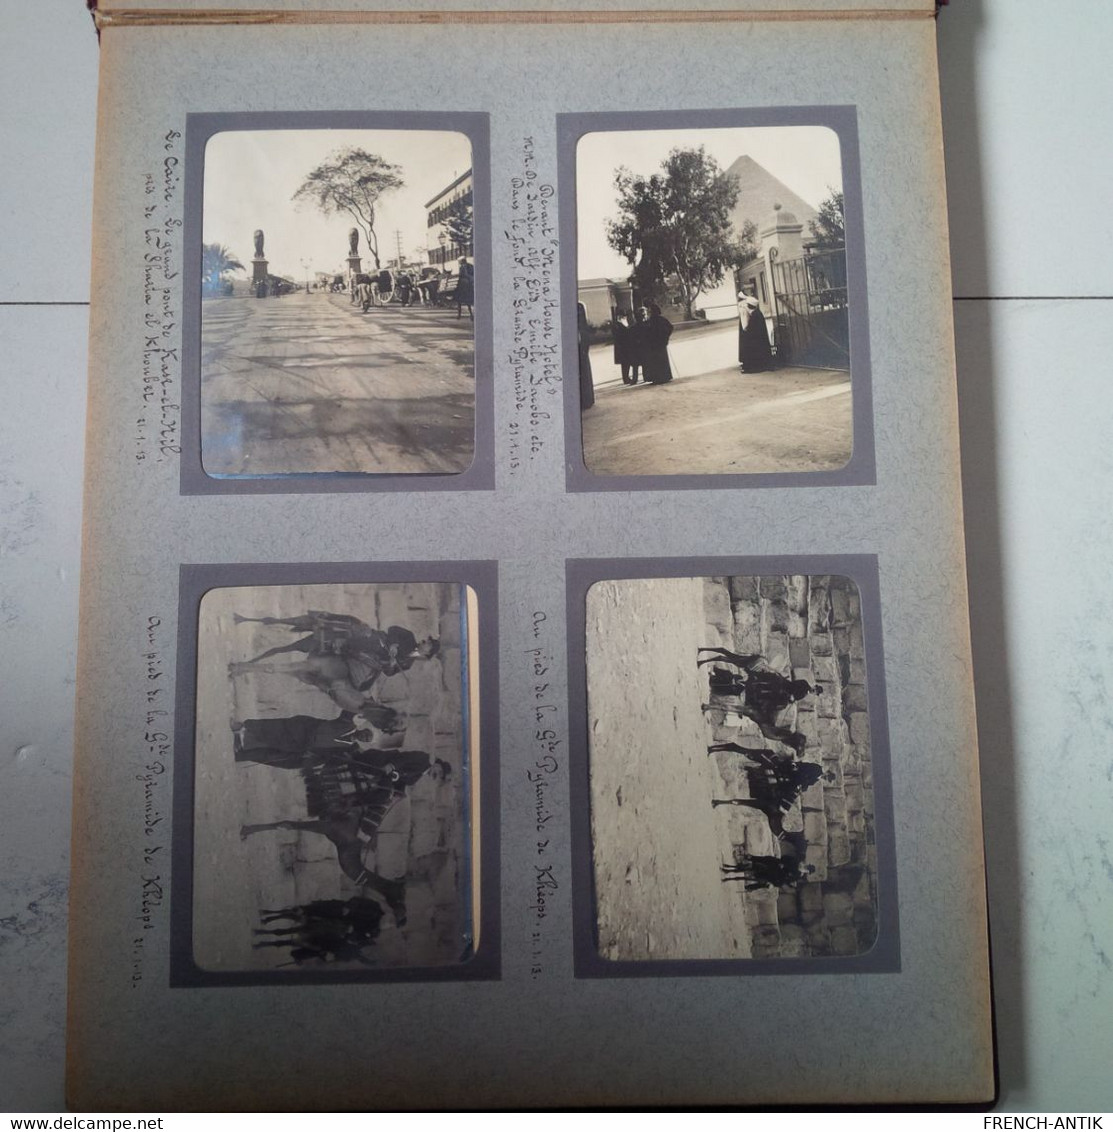 ALBUM PHOTO VOYAGE BATEAU PRINZ REGENT LUITPOLD NAPLES ALEXANDRIE PYRAMIDE HELIOPOLIS KAFR EL DAWWAR 1913 - Albums & Collections